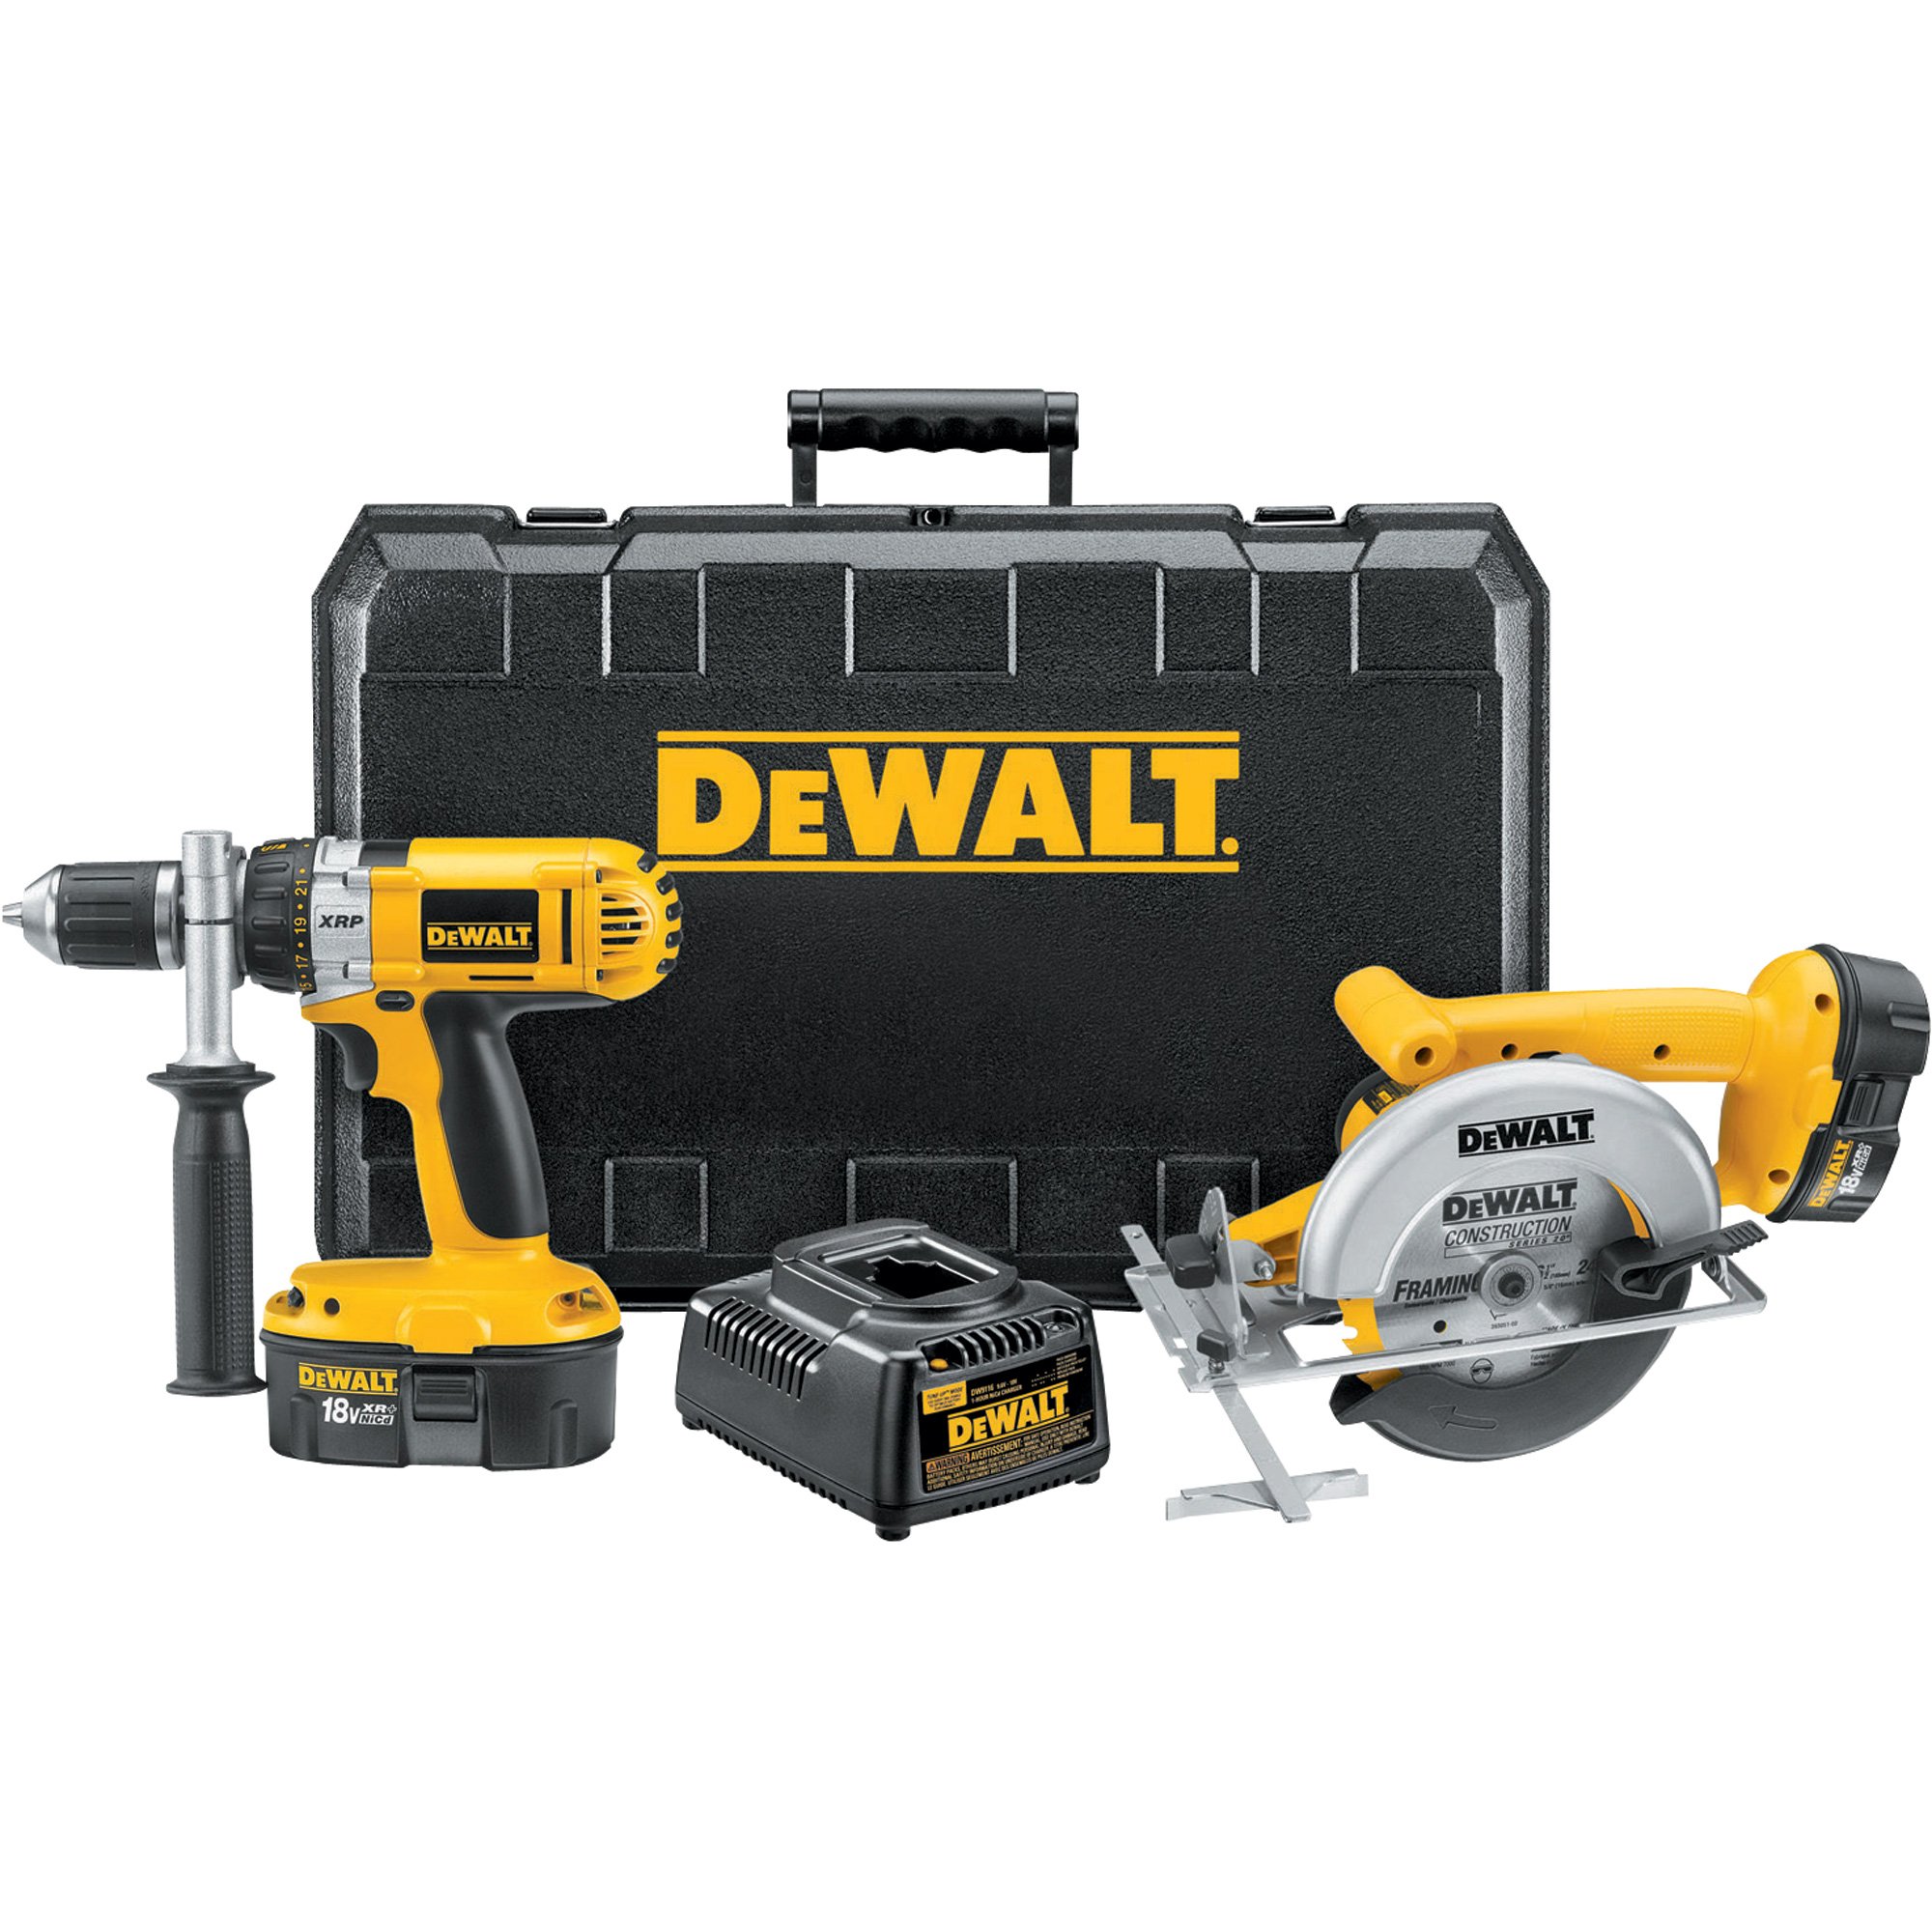 DeWalt Tools Decal Sticker Bumper Tool Box Saw Drill 8 x 2.50